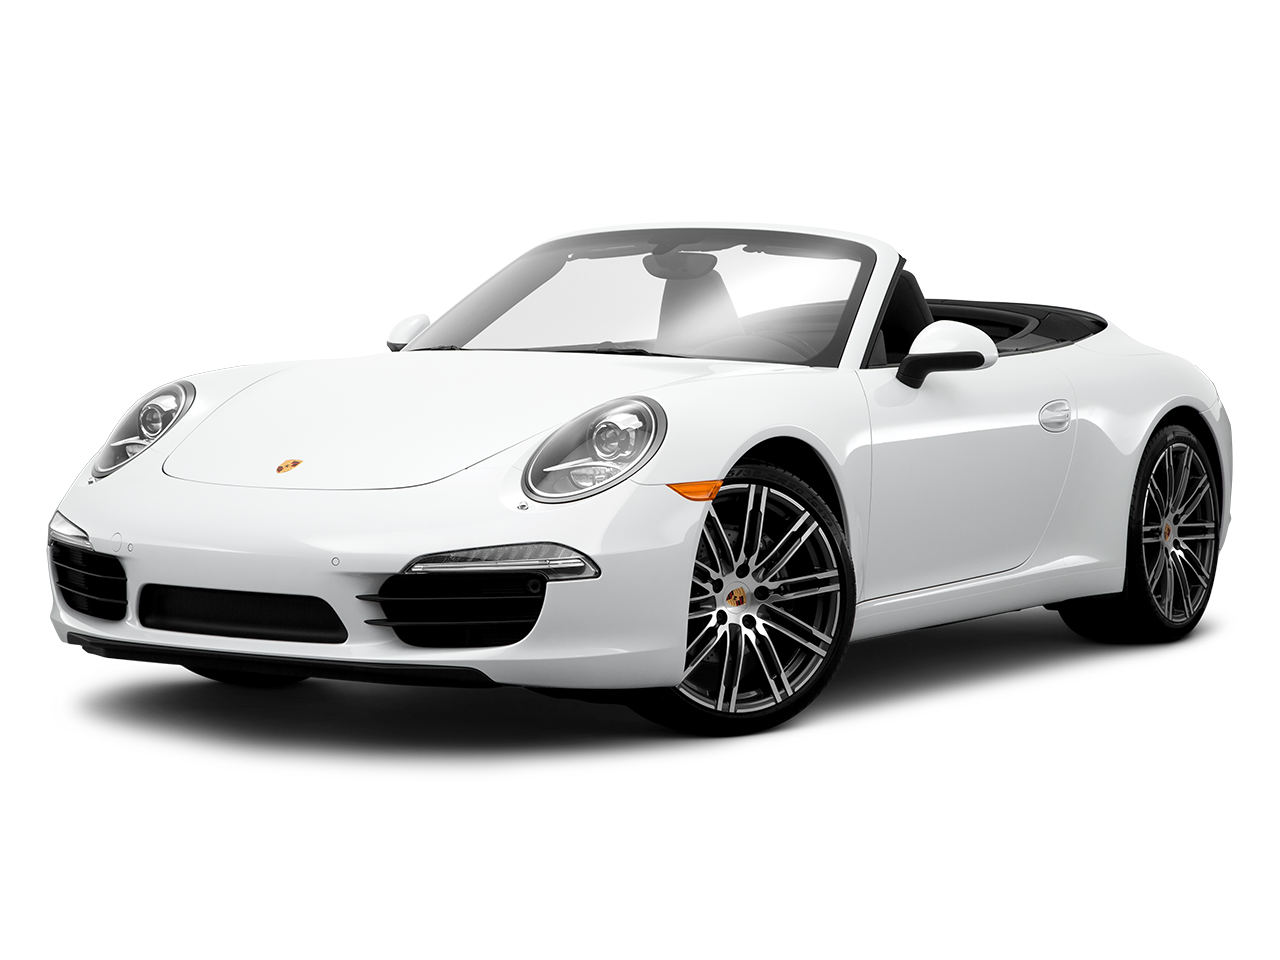 Carro Porsche